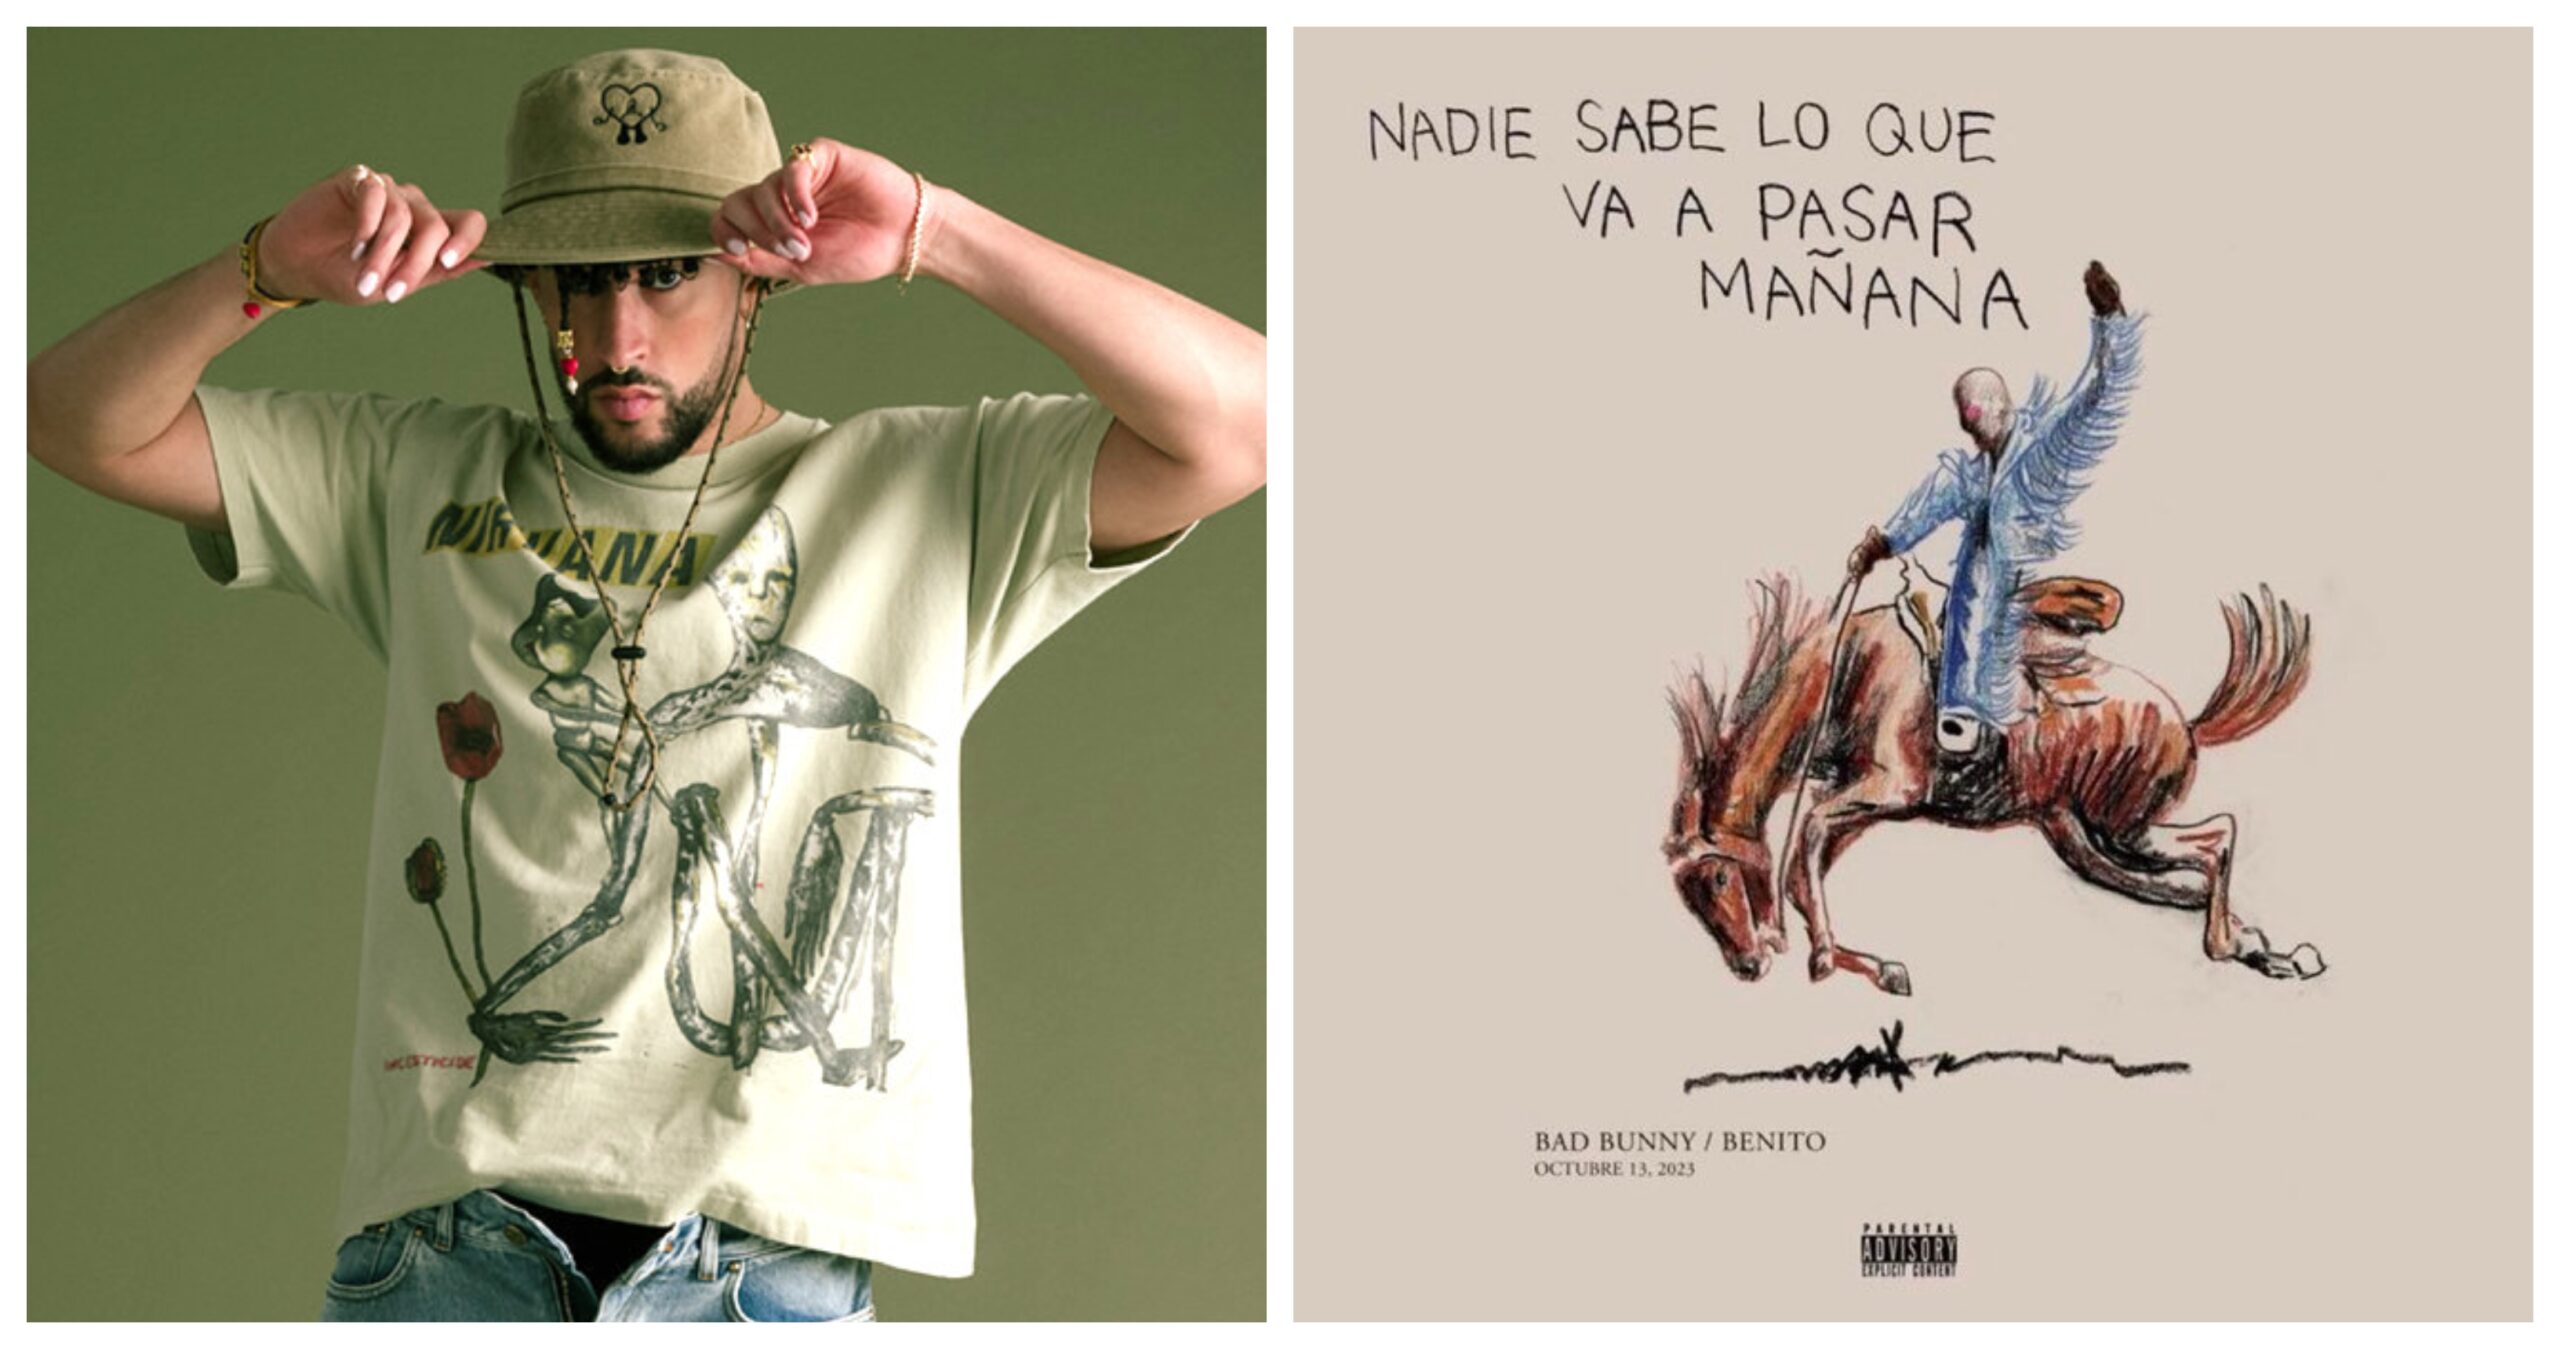 Billboard 200: Bad Bunny Debuts at #1 With ‘Nadie Sabe Lo Que Va a Pasar Mañana’